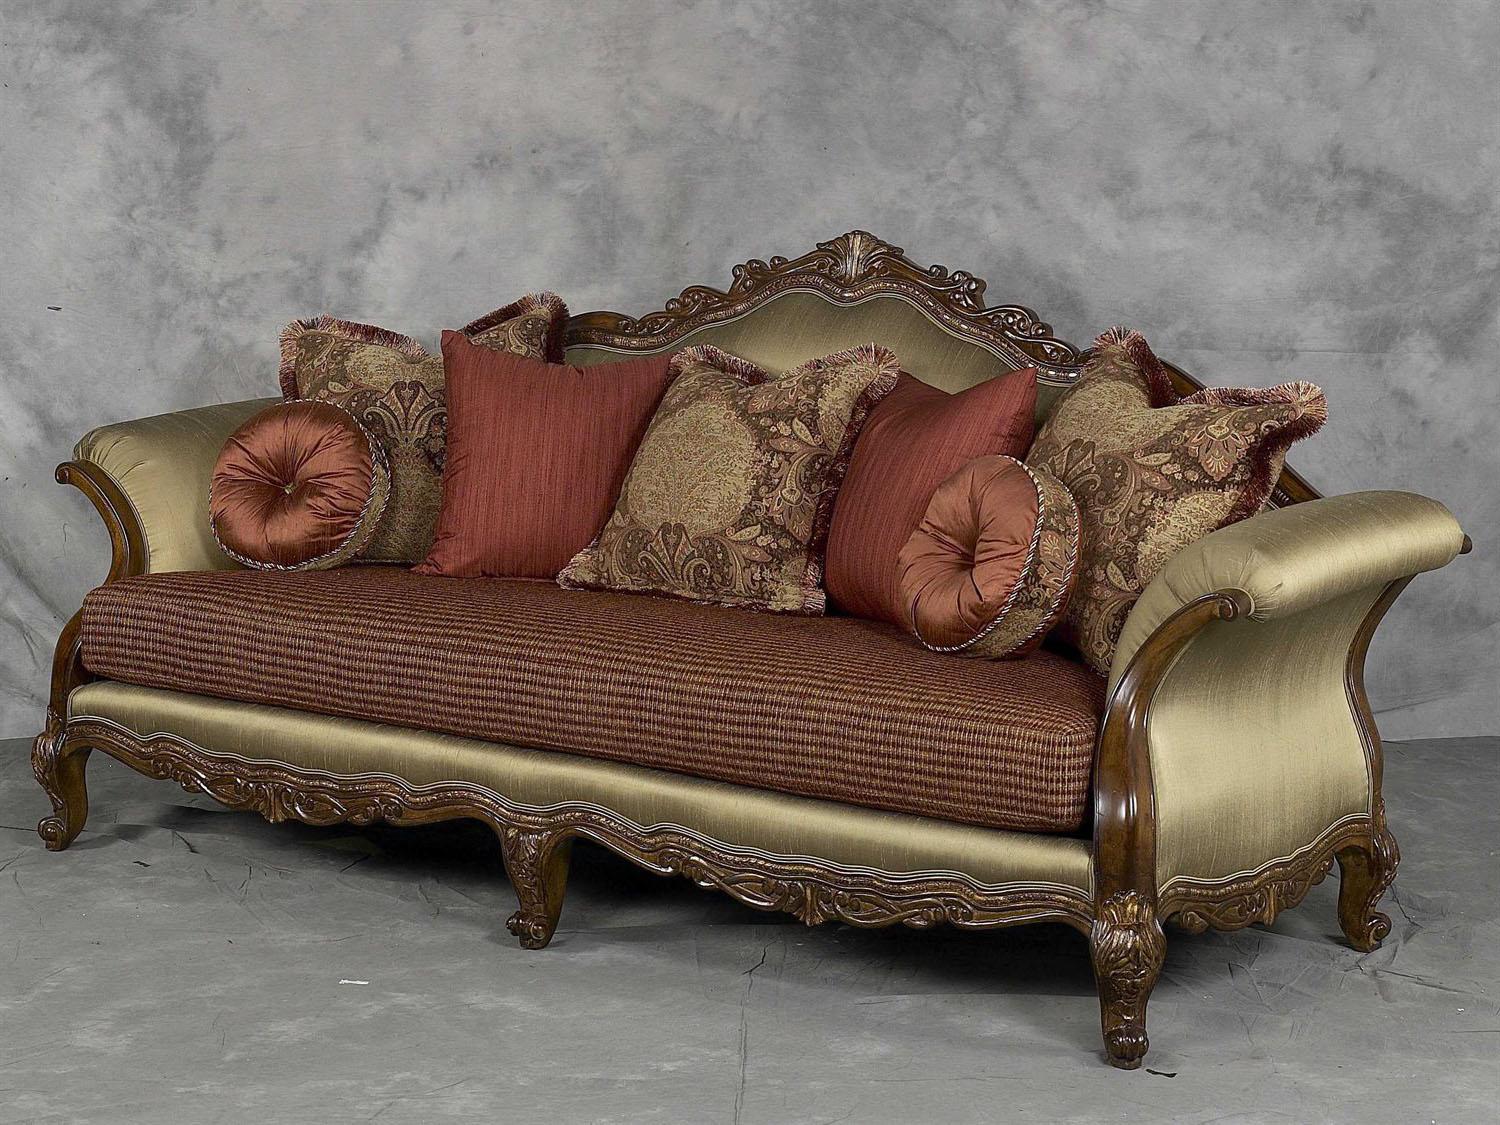 

    
Luxury Silk Chenille Solid Wood Formal Sofa Classic Benetti's Regalia Classic
